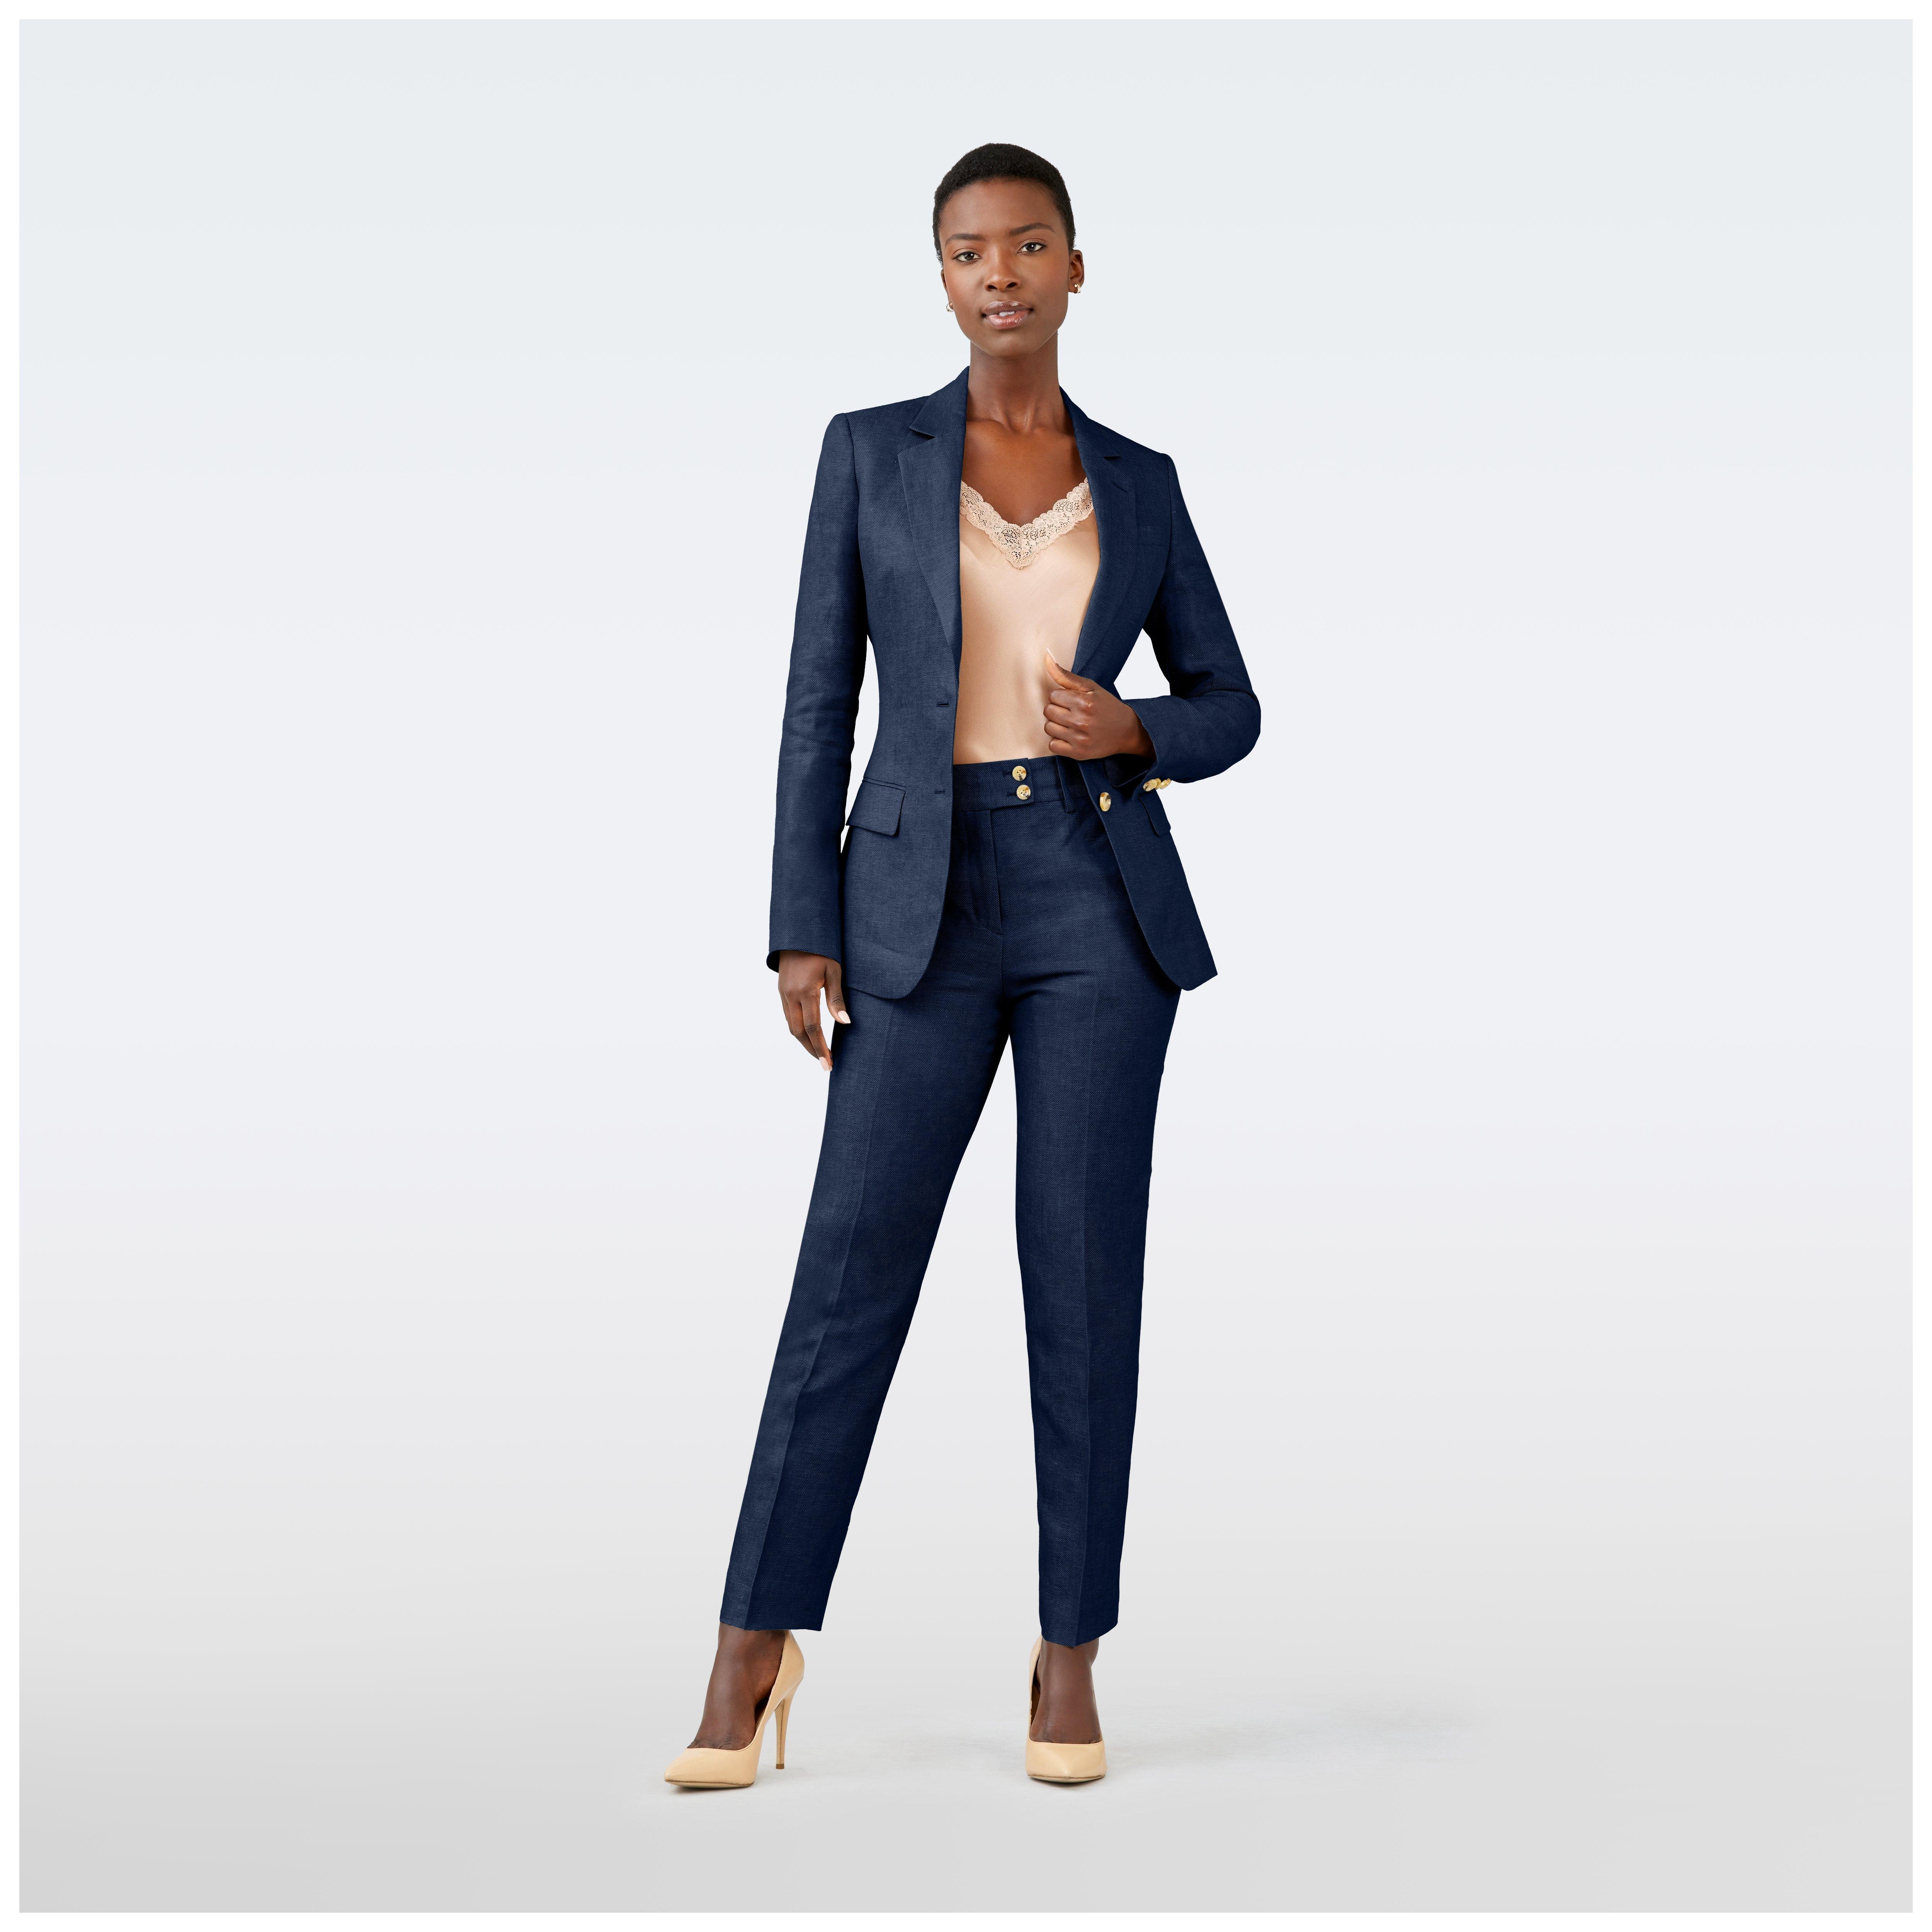  Women's Business Suit Blue